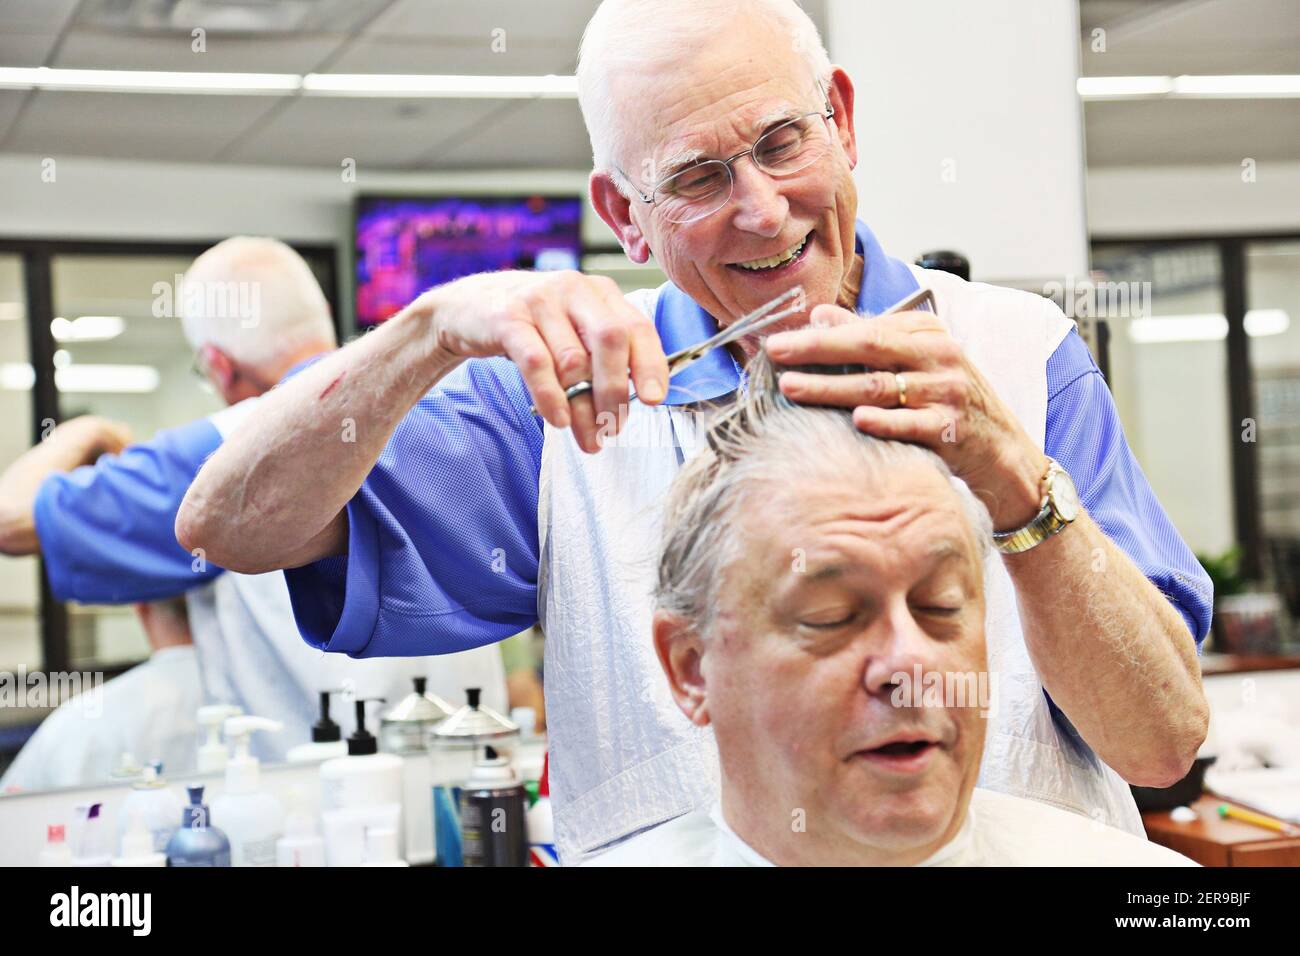 David Fowler, el barber principal en Duke Barbershop en Durham, N.C., se ríe con Jim Thames, el 25 de mayo de 2018. Duke Barbershop cerrará a finales de mayo después de más de un siglo en el campus, con Fowler cortando el pelo allí durante 55 años. (Foto de Juli Leonard/Raleigh News & Observer/TNS/Sipa USA) Foto de stock